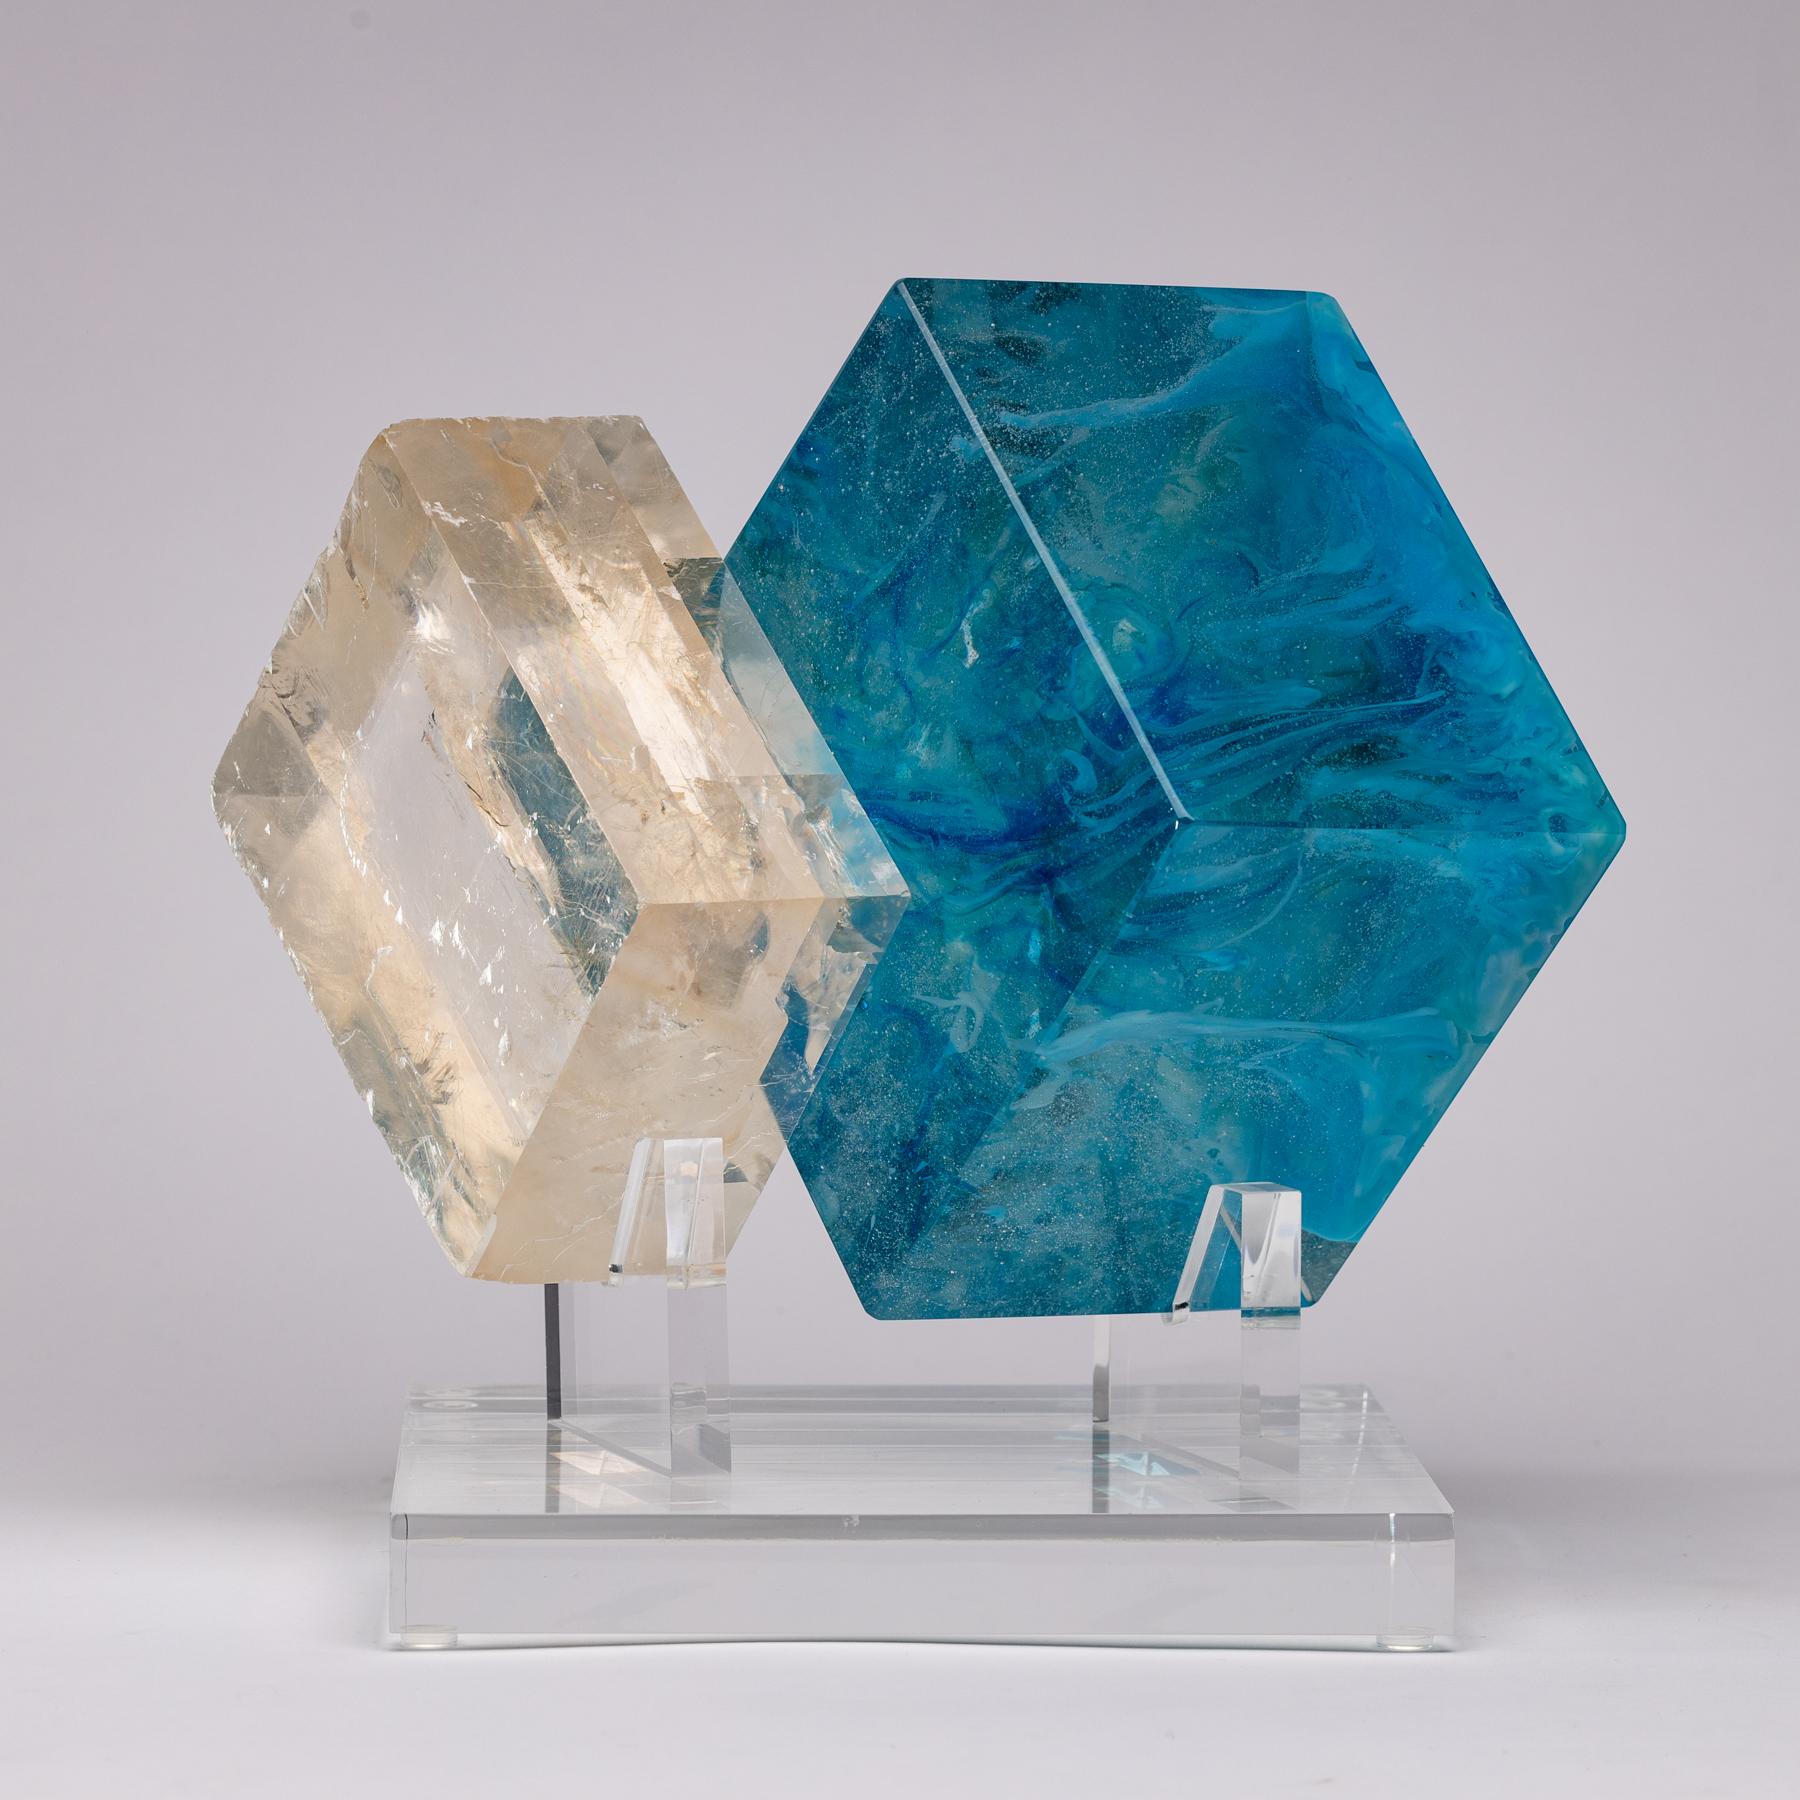 Cubes blues, Skulptur aus optischem Kalzit und Glas aus der Kollektion TYME, eine Zusammenarbeit von Orfeo Quagliata und Ernesto Durán

TYME-Kollektion 
Ein Tanz zwischen Reinheit und Detail bringt einzigartige Stücke hervor, die die Edelsteine